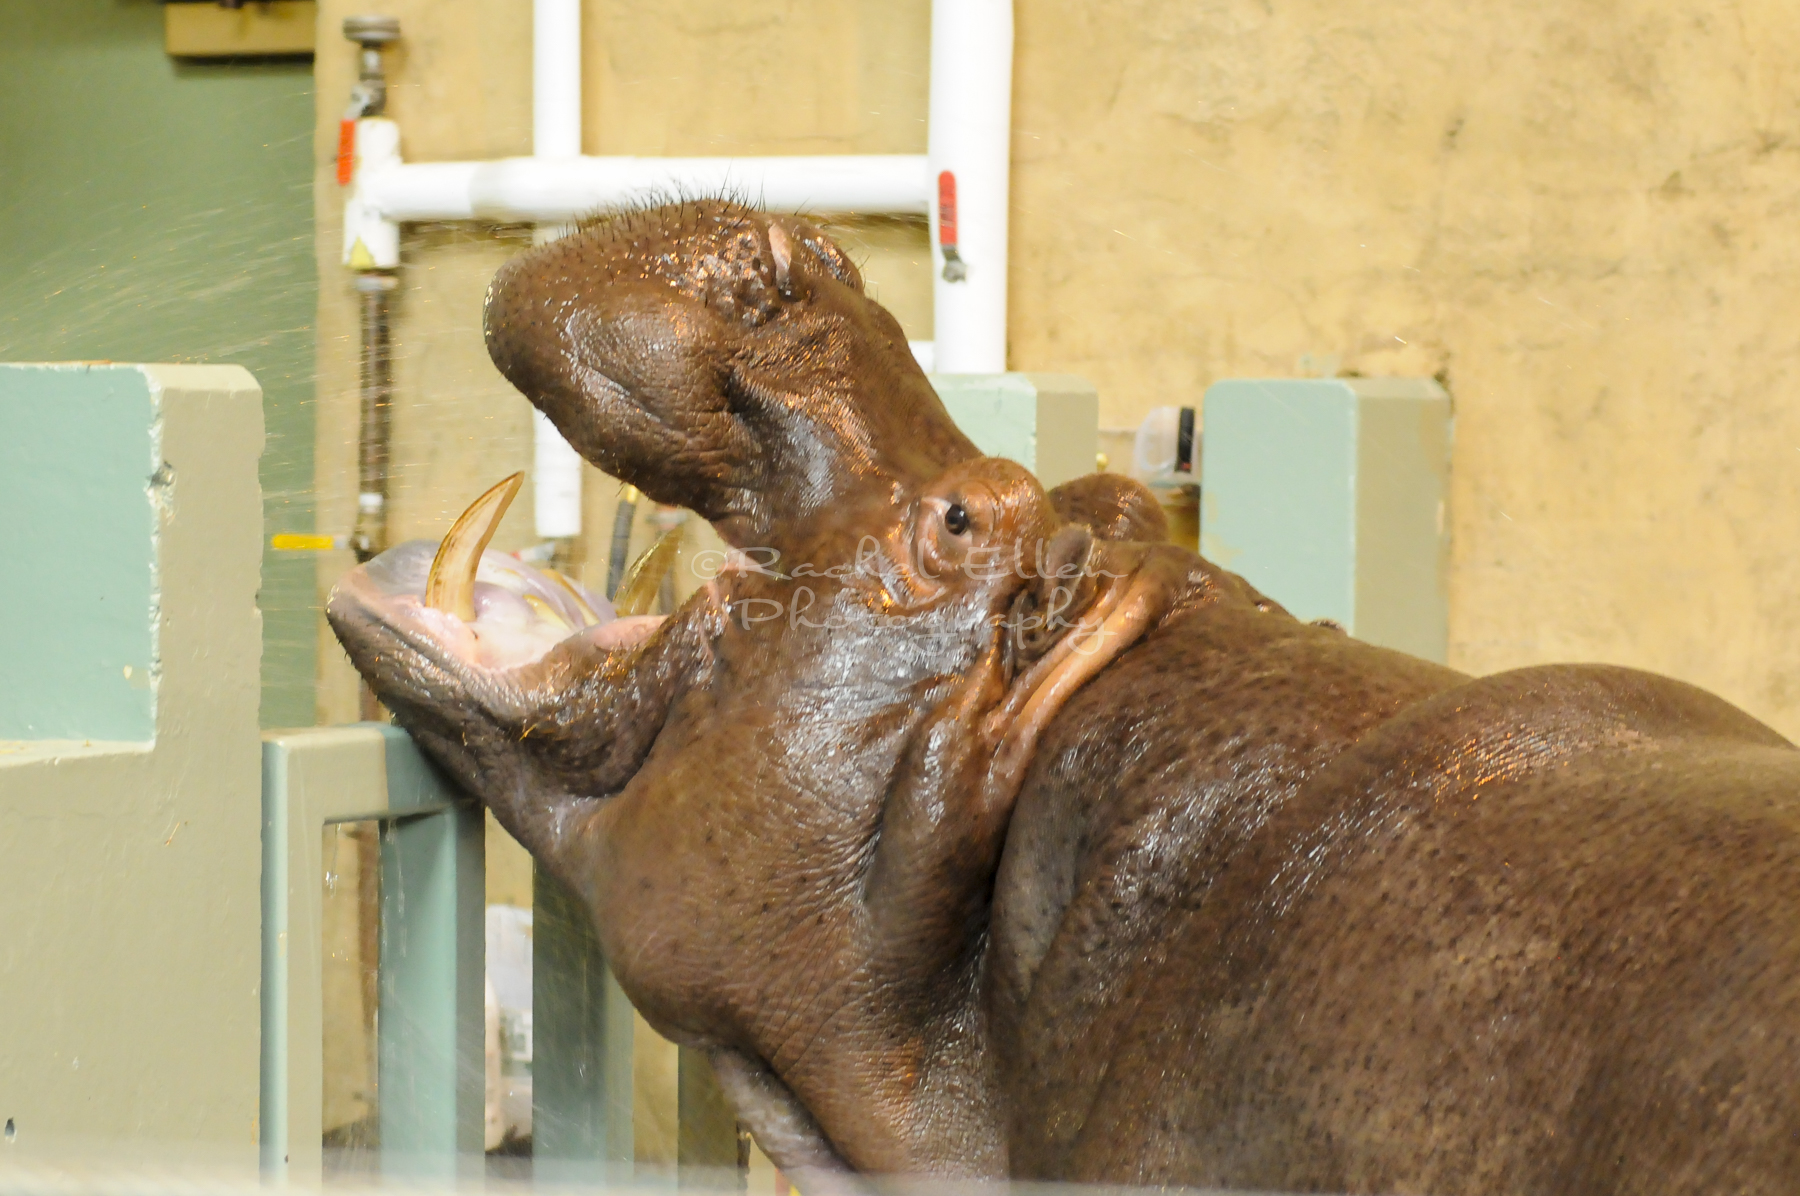 Hippo at the Calgary Zoo